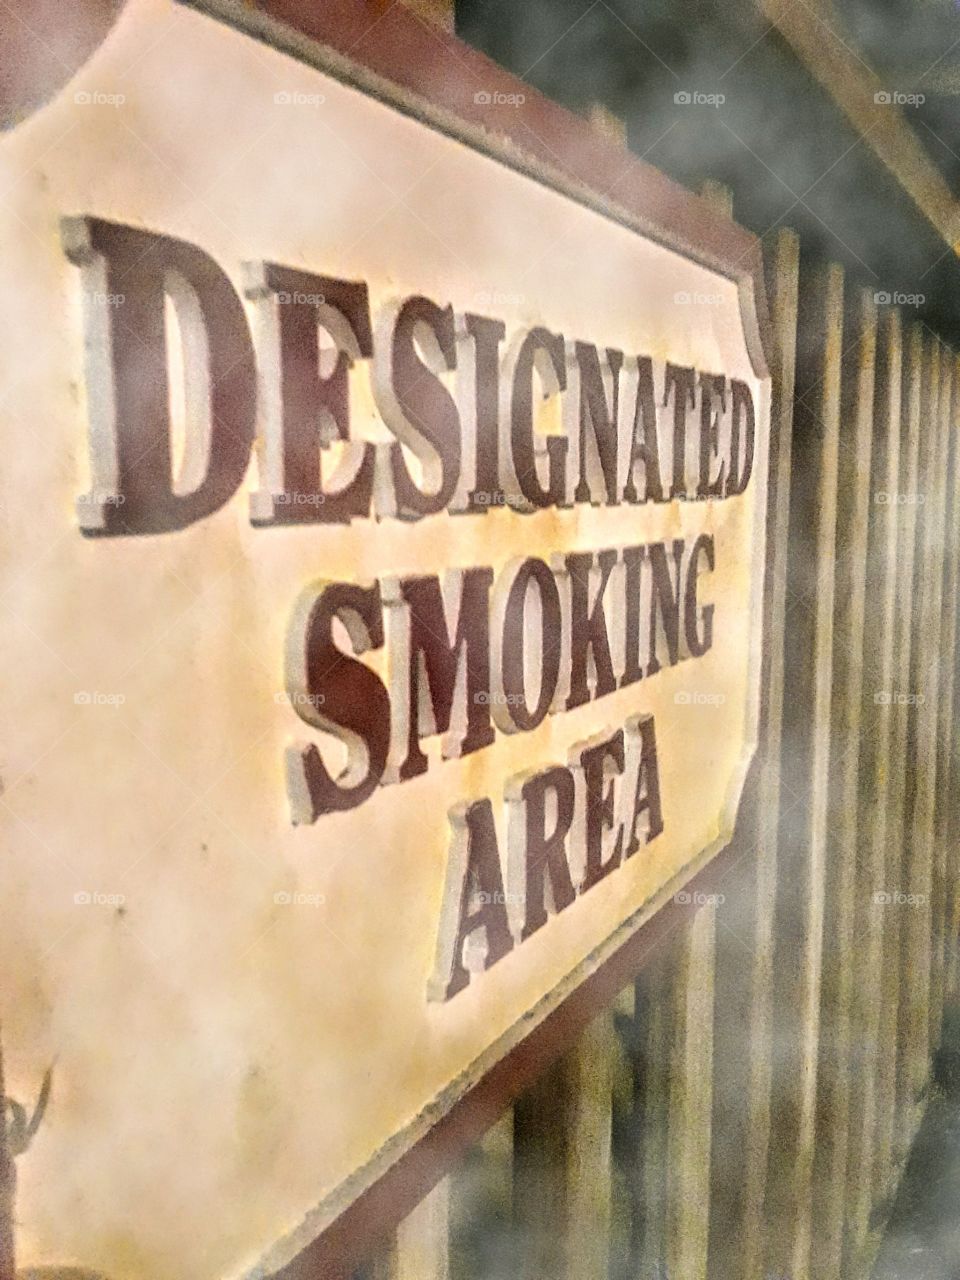 Smokey smoking area.